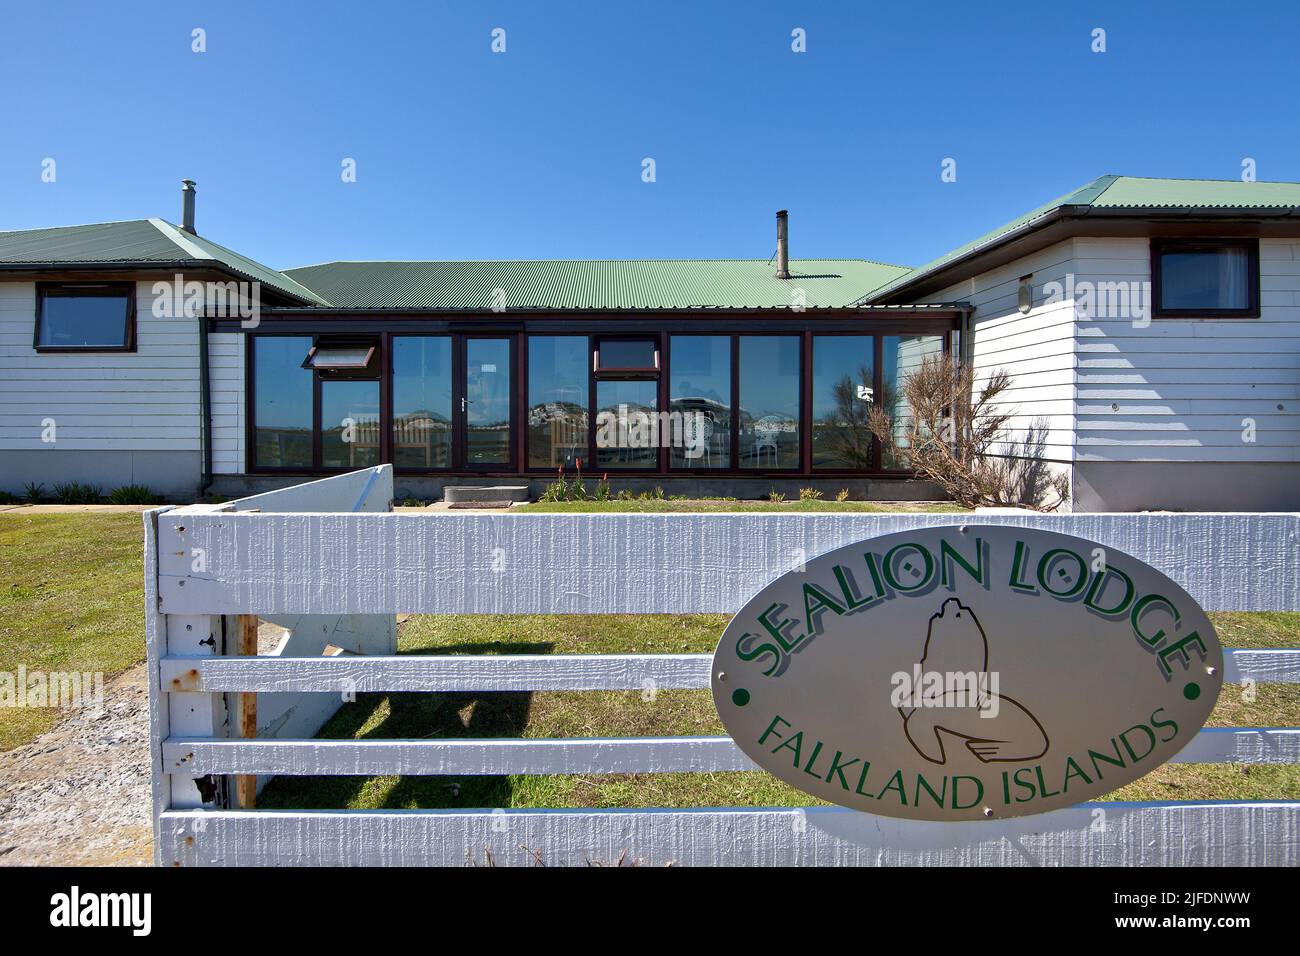 Sea Lion lodge, Falkland Islands Stock Photo